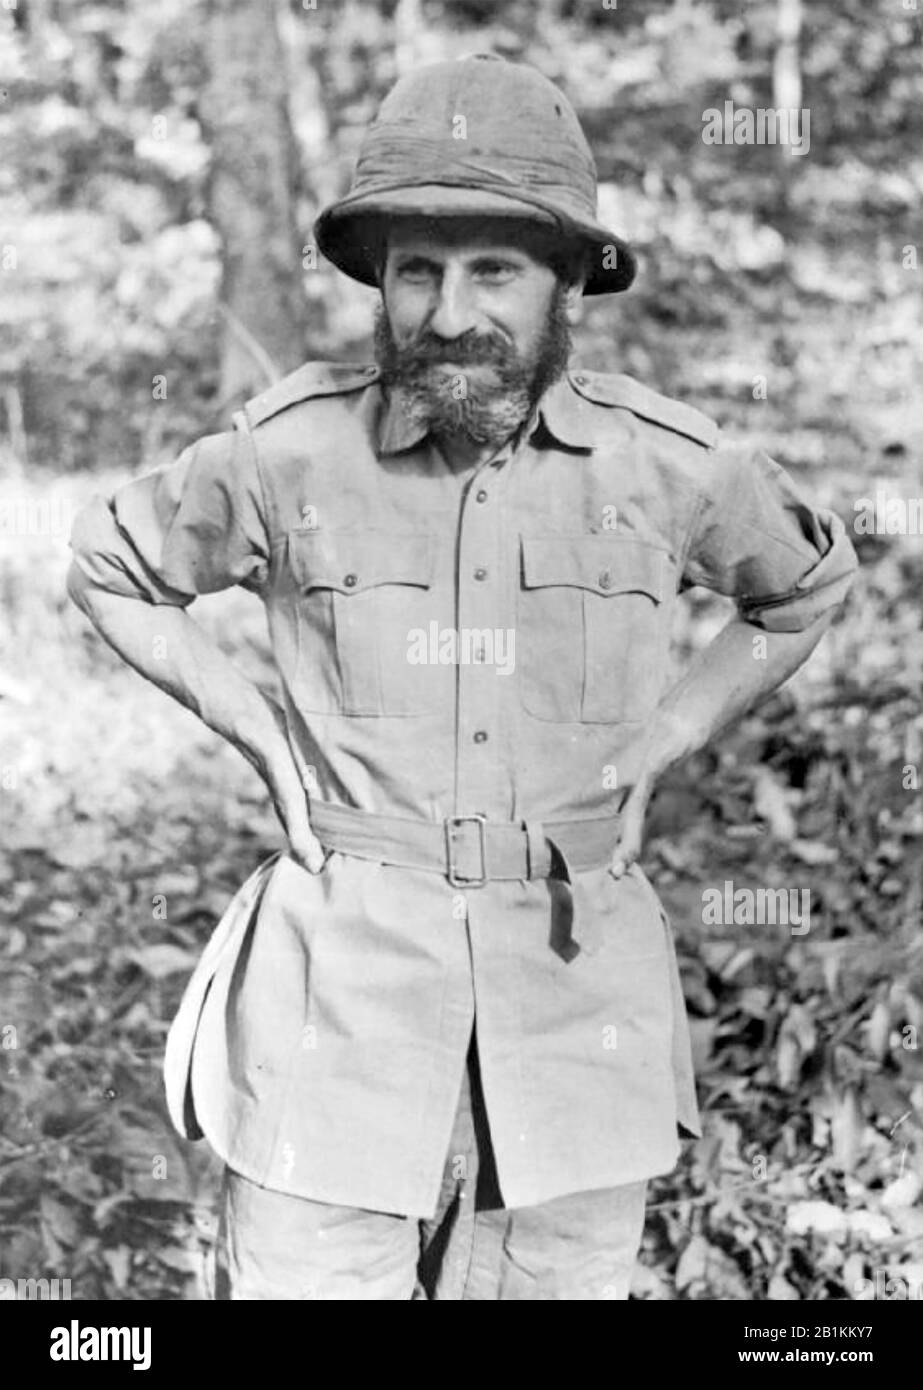 Orde WINGATE (1903-1944) Offizier der British Army, der während der Burma Campaign of WW2 tiefe Eindringungsmissionen in japanisch behaltenes Gebiet leitete. Fotografiert im Jahr 1943. Stockfoto